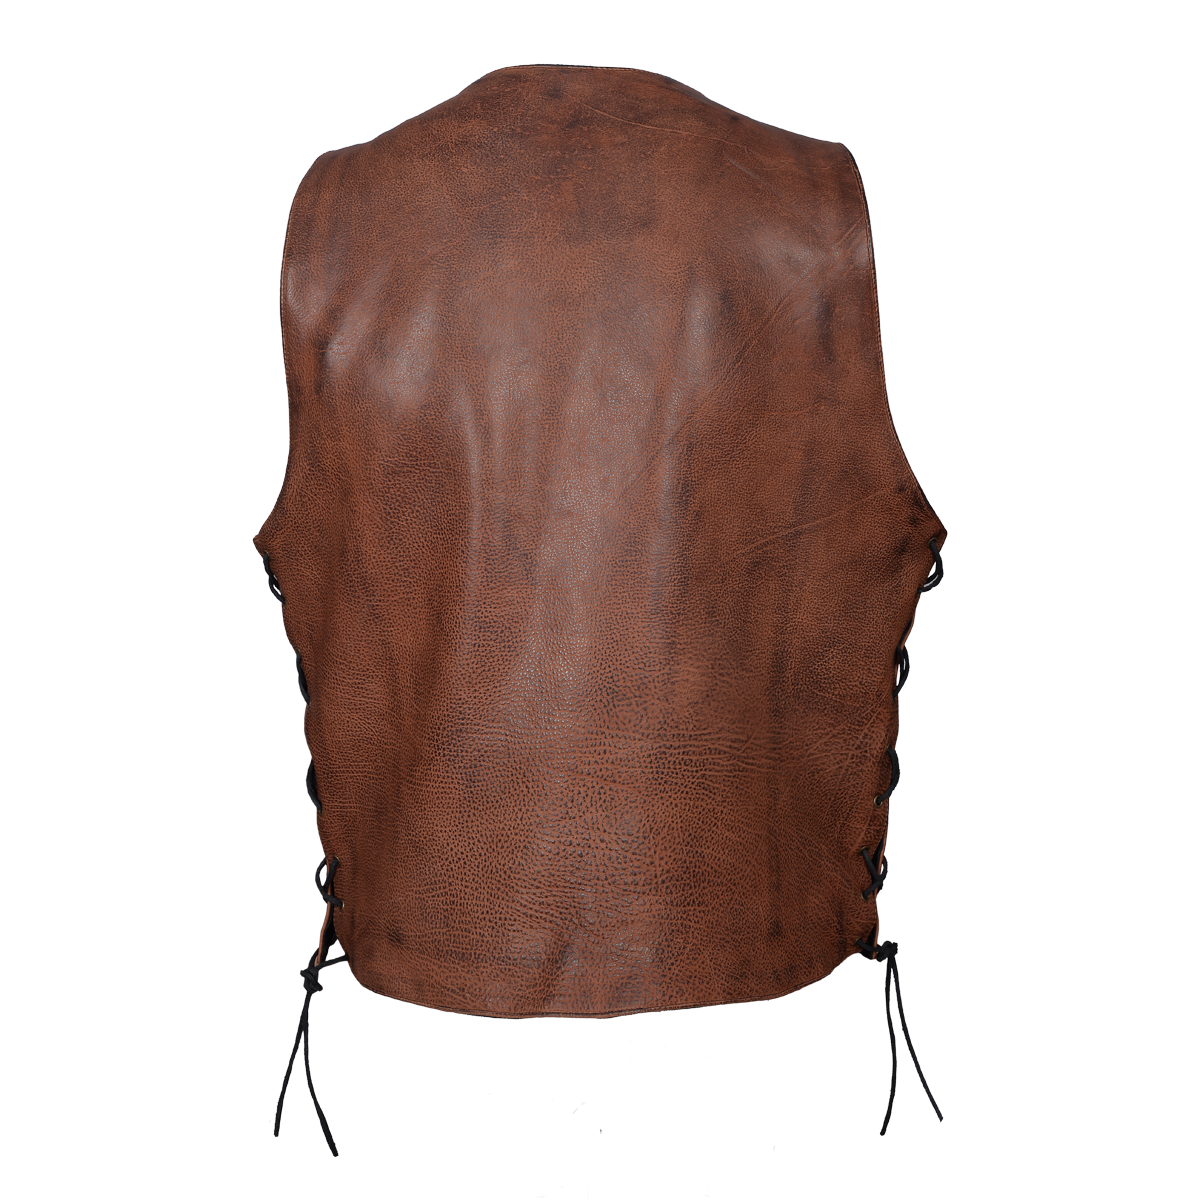 HMM915VB Men's Vintage Brown 10 Pocket Vest